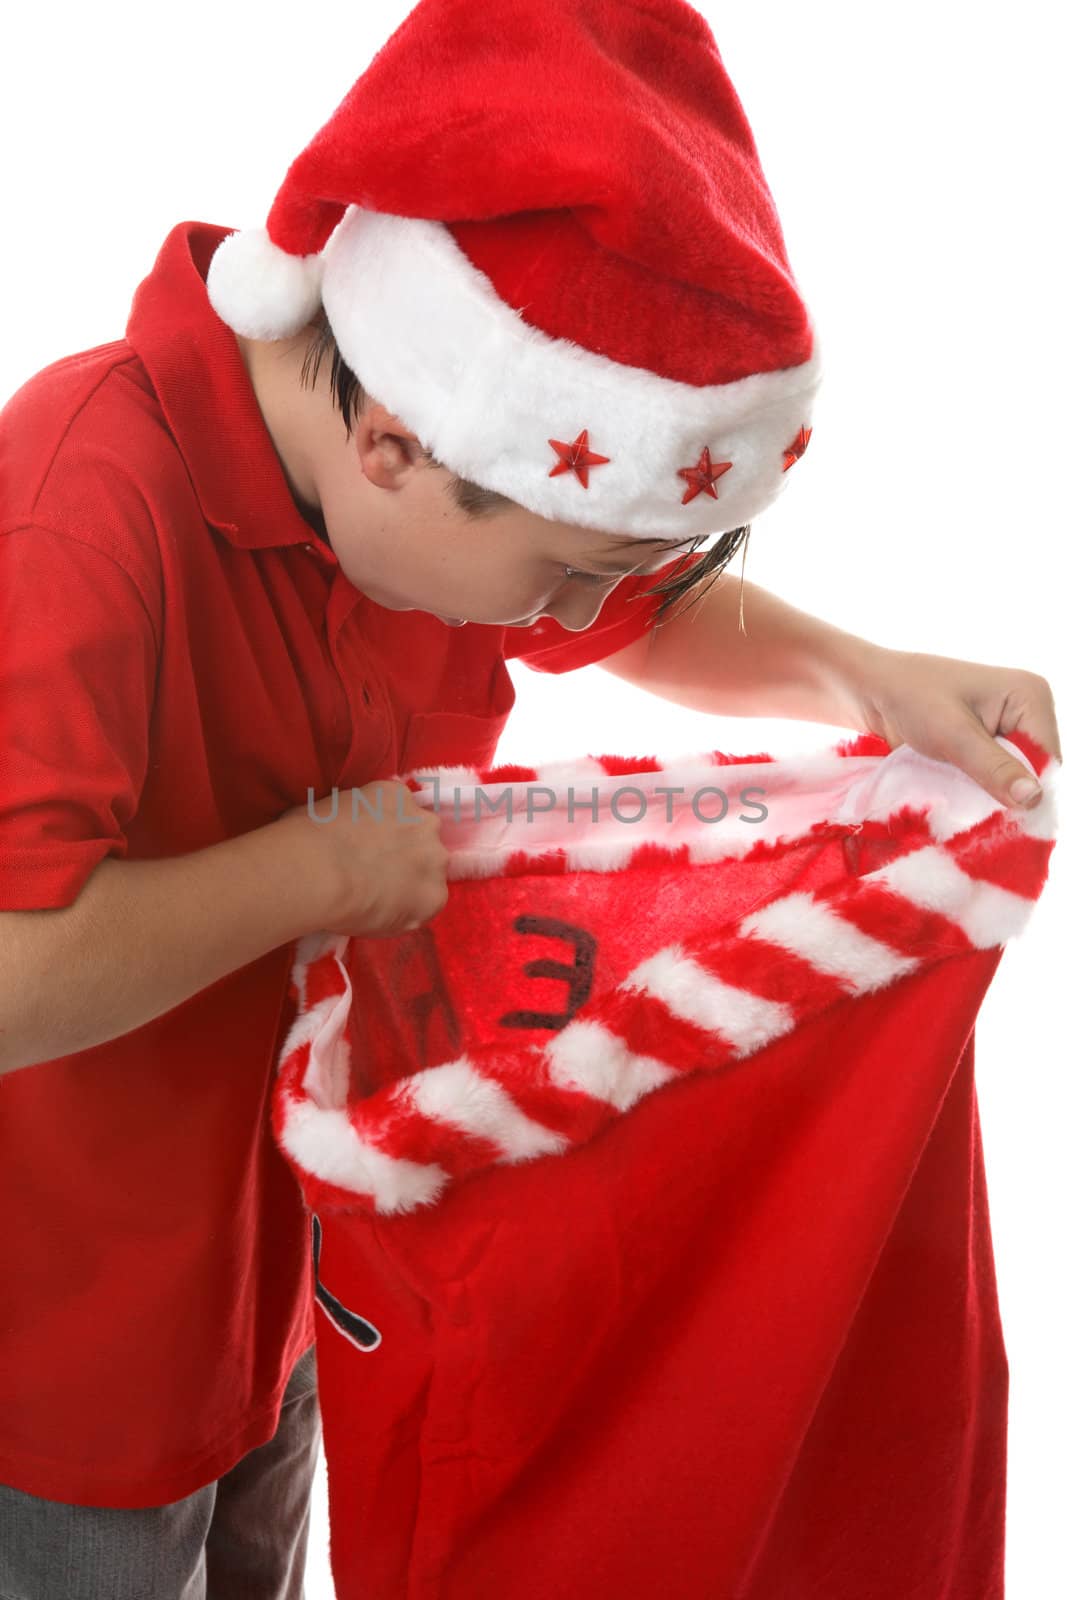 Santa's Gifts by lovleah